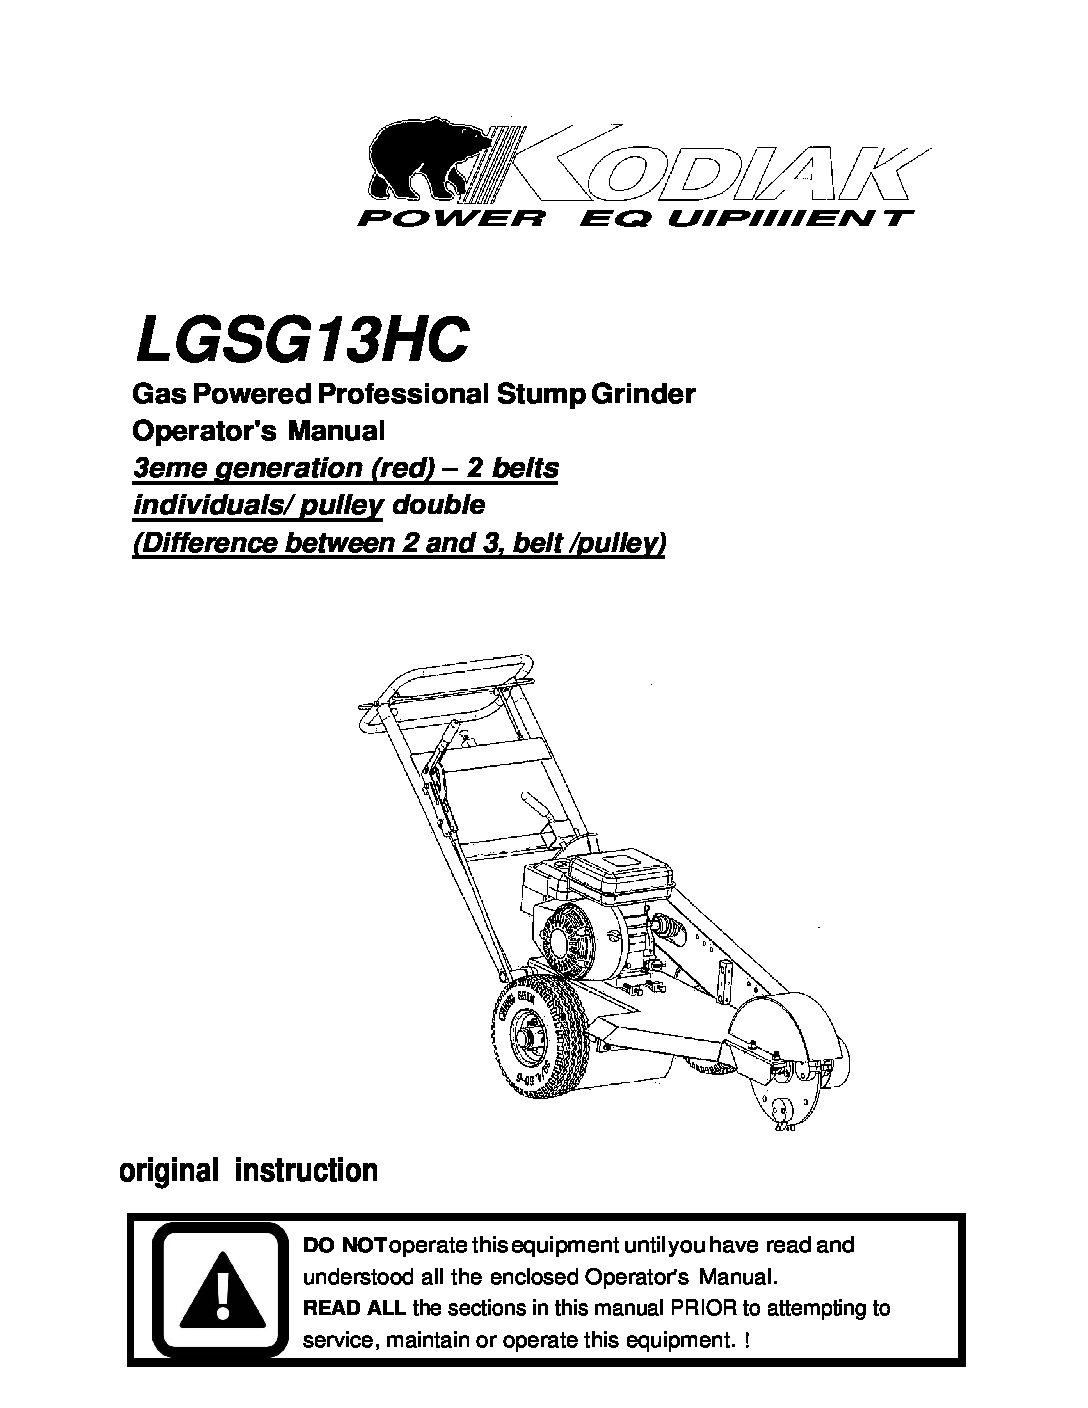 LGSG12HC Parts Breakdown